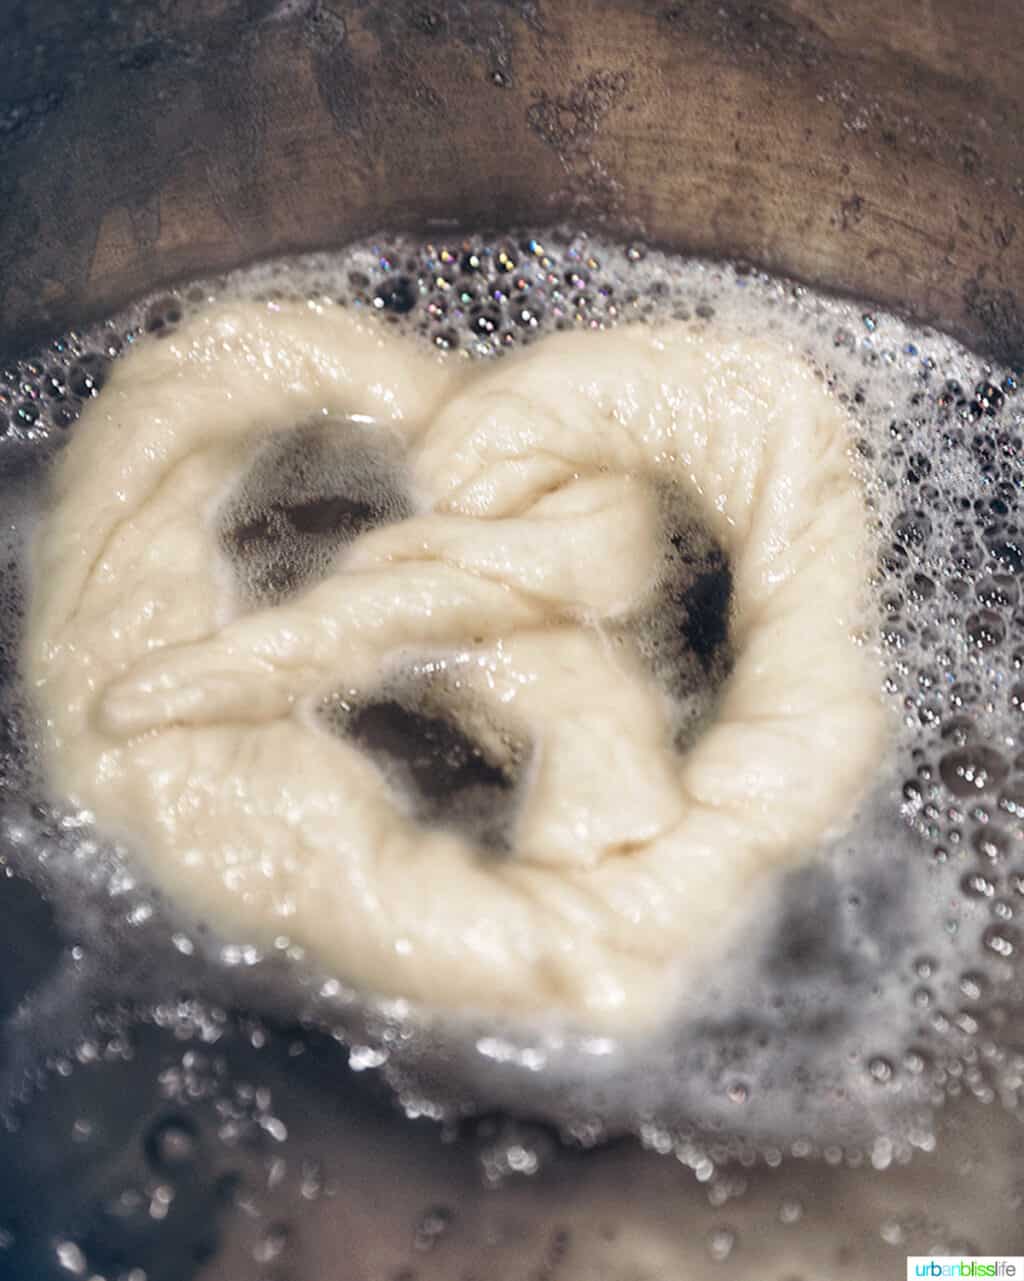 soft pretzel boiling in water